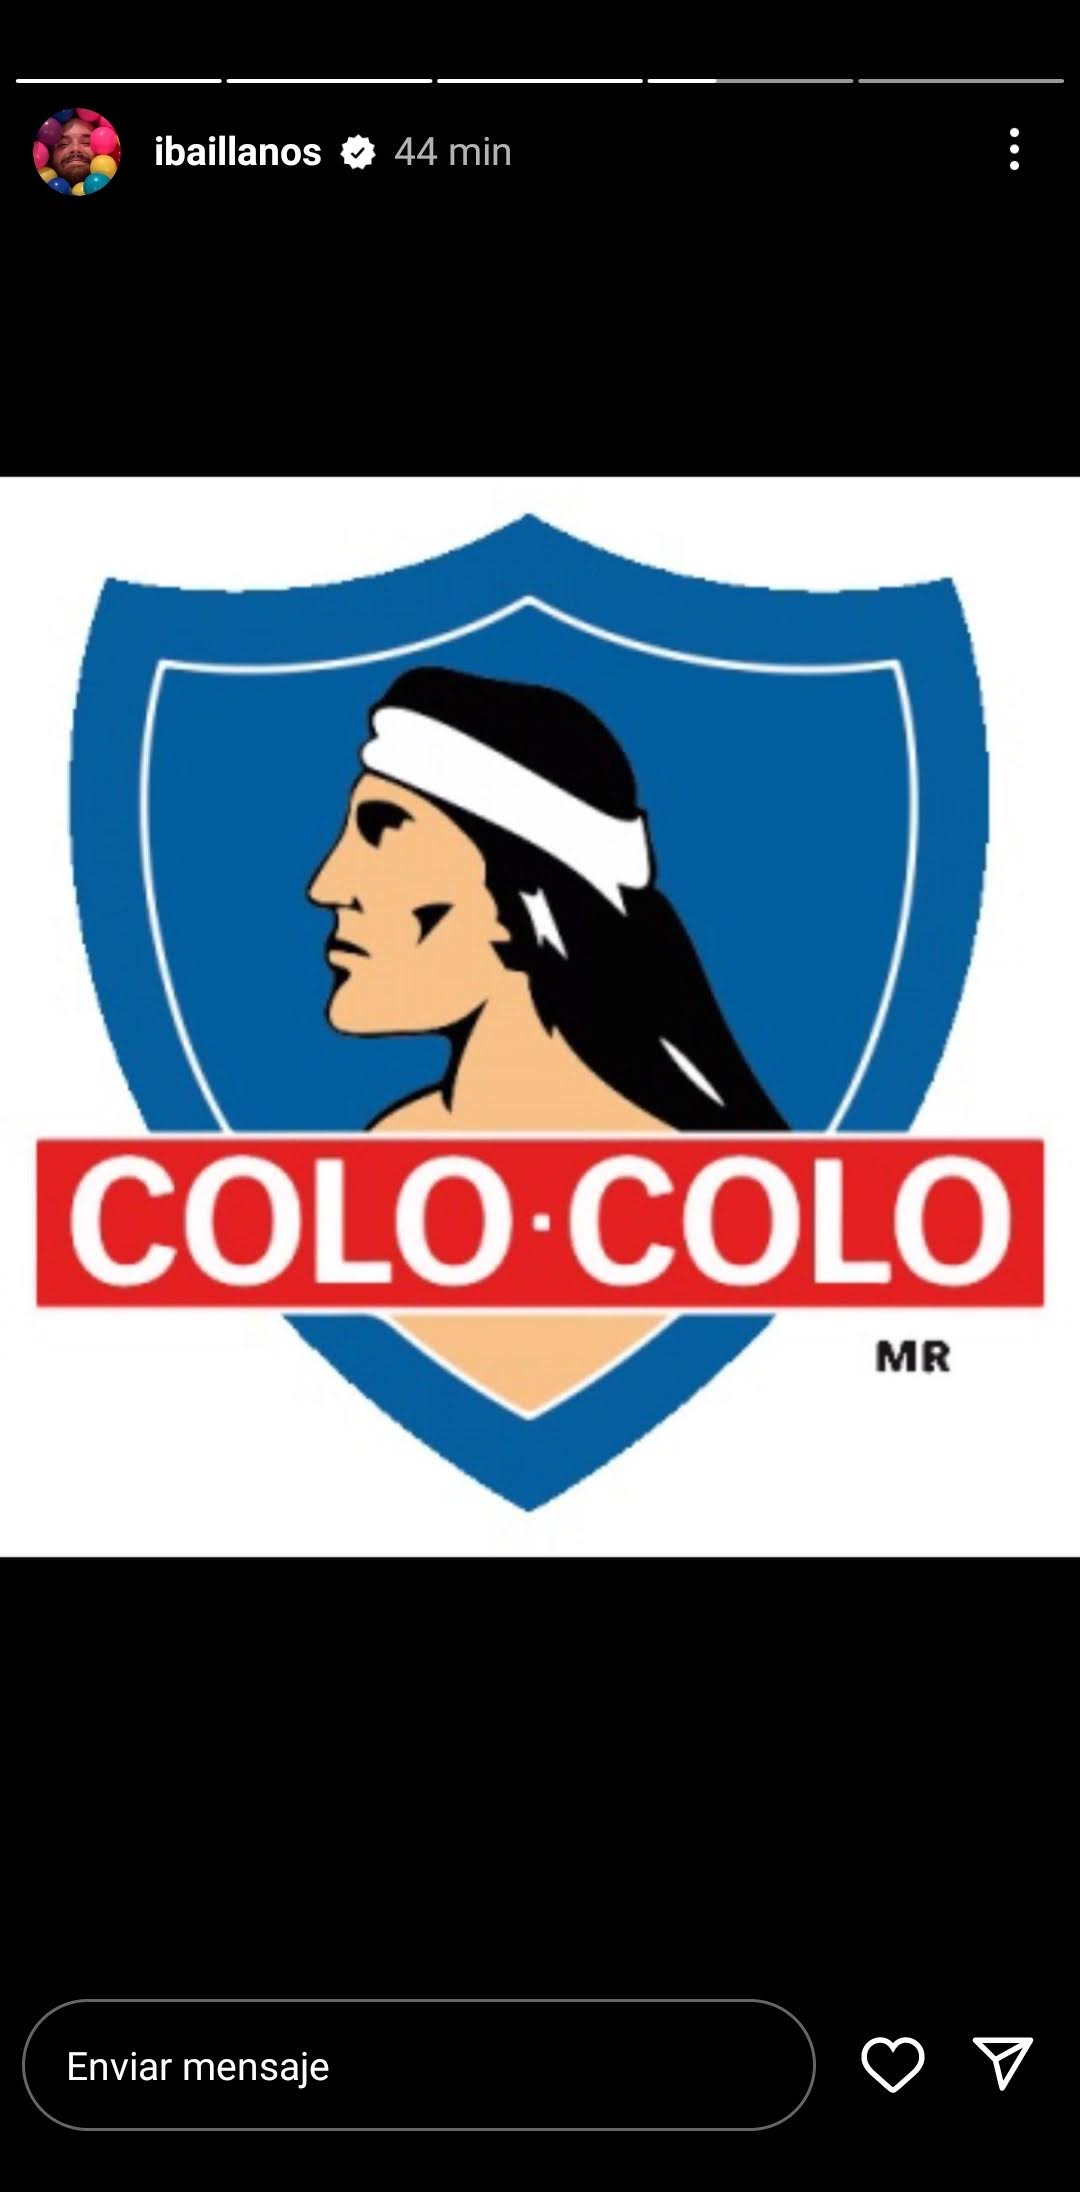 El escudo de Colo Colo en las historias de Ibai Llanos - Captura de pantalla